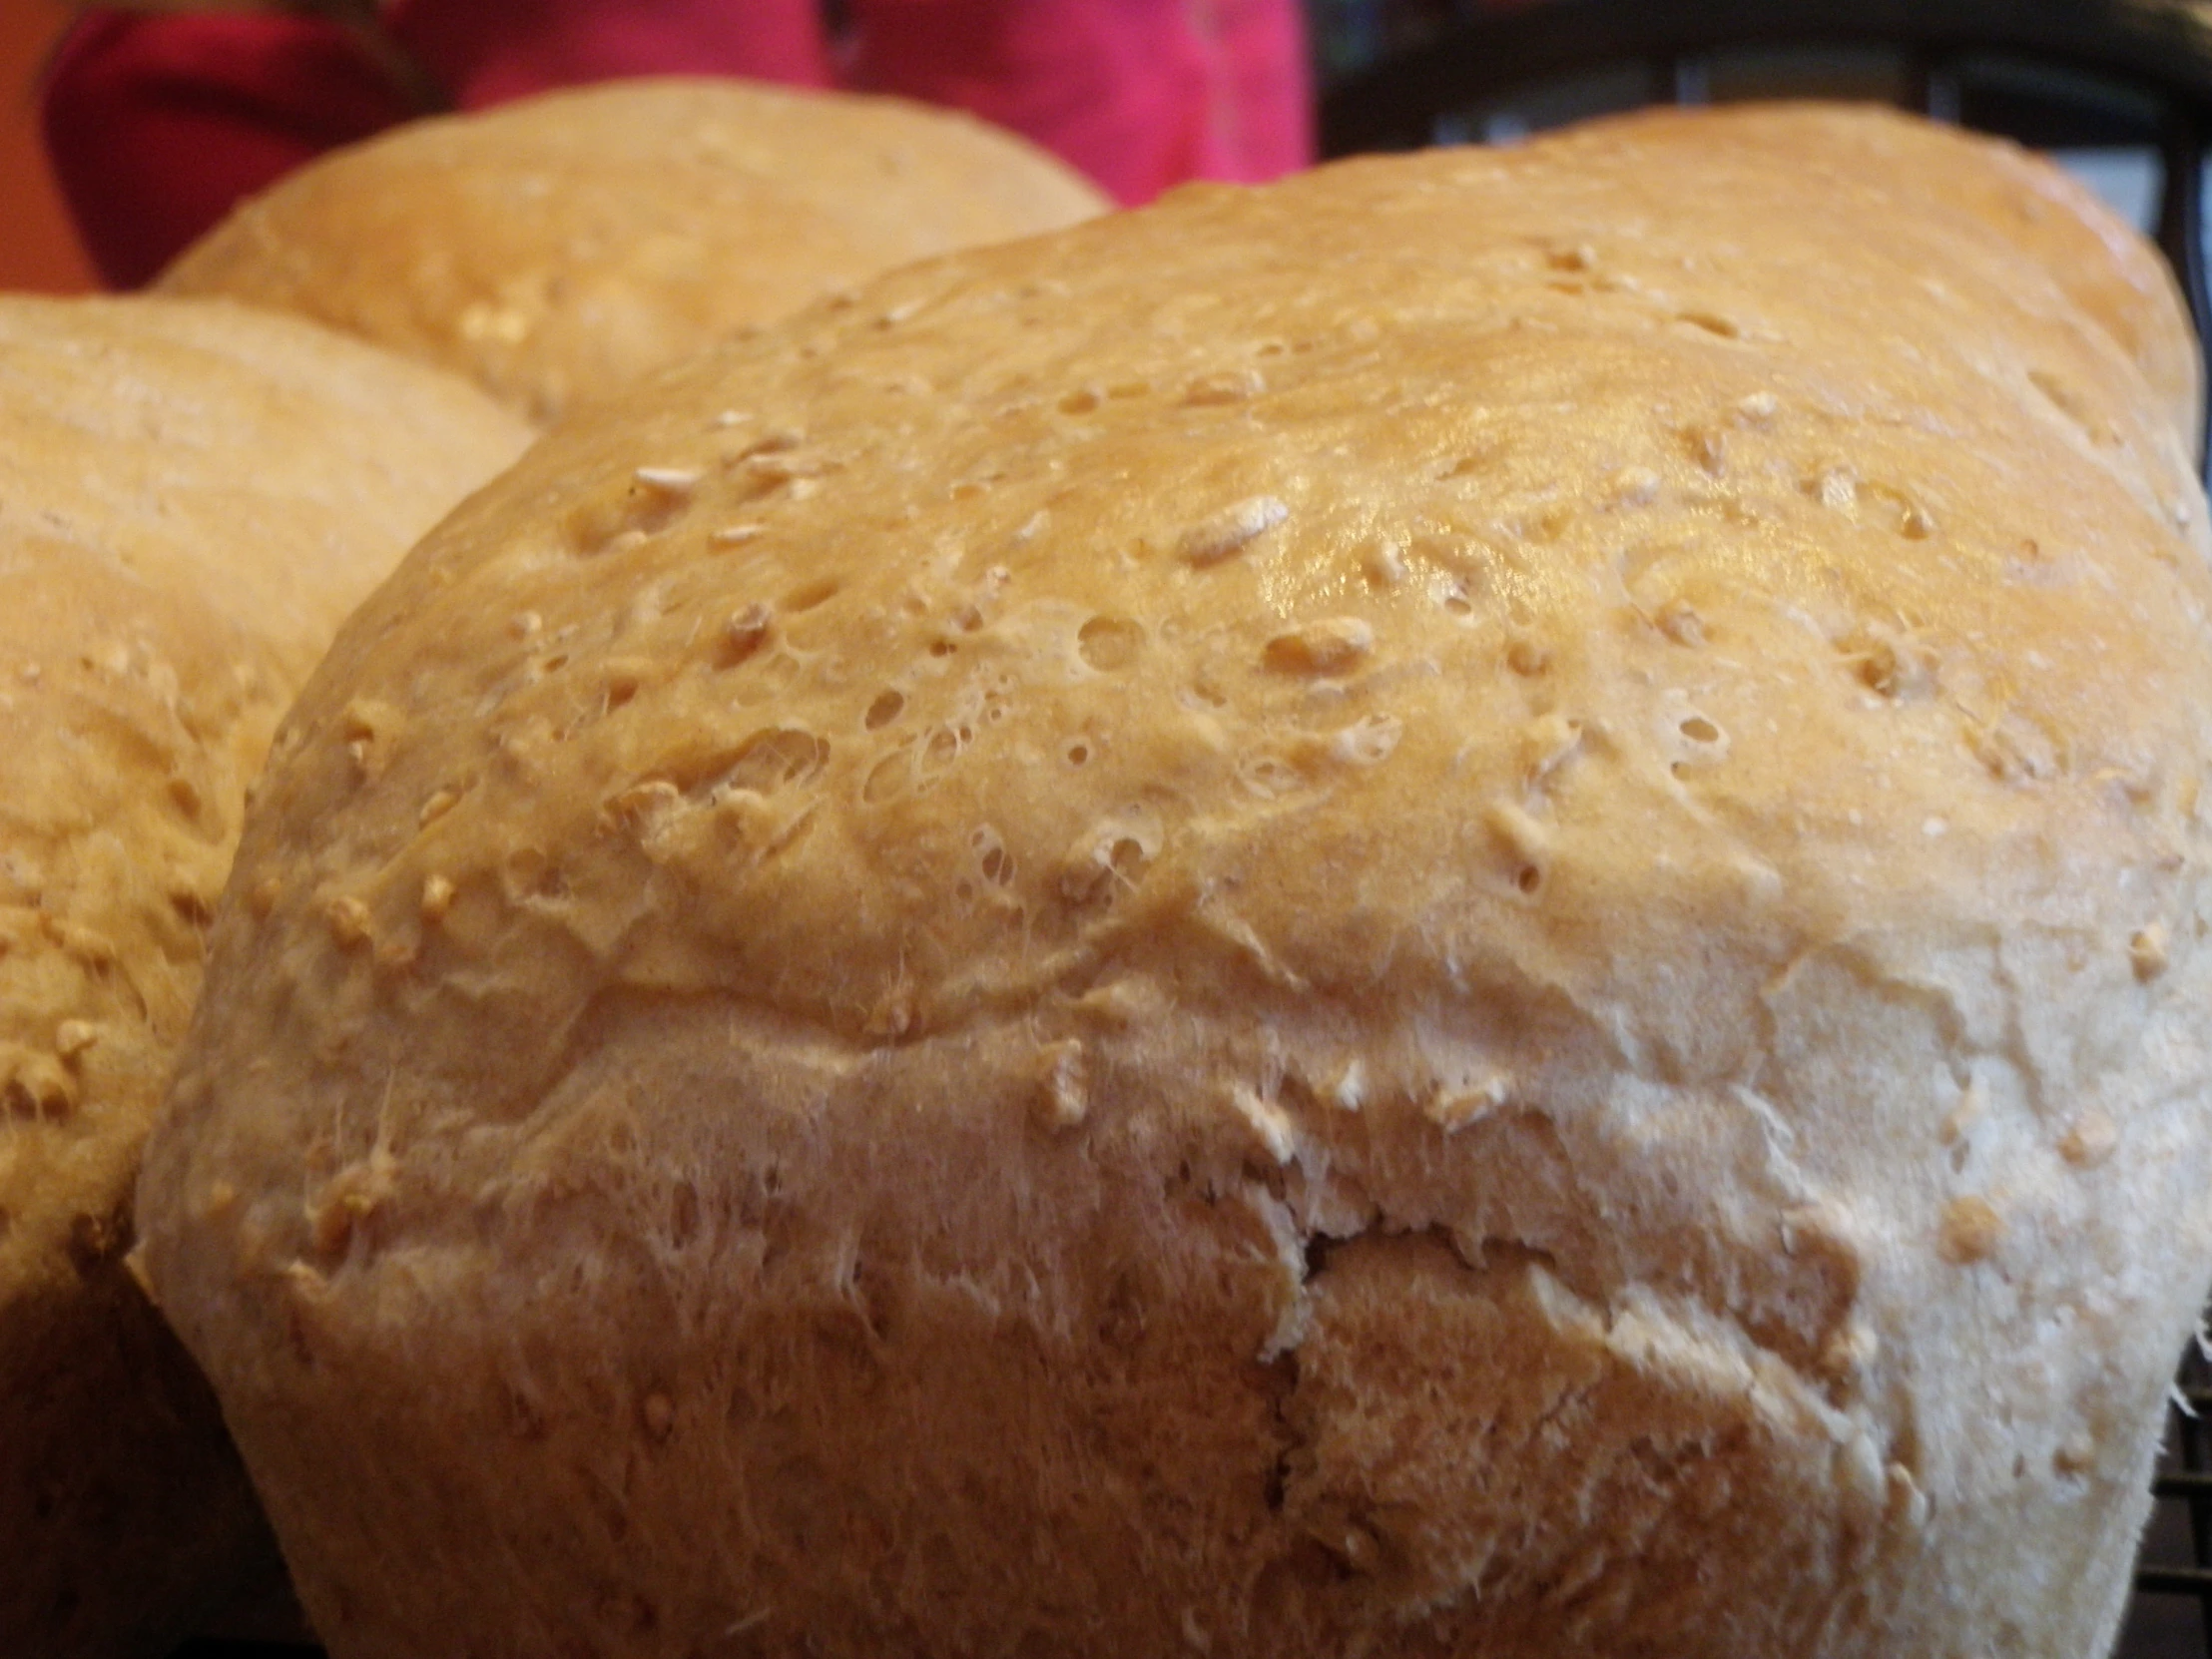 a bunch of freshly baked bread in a bundt